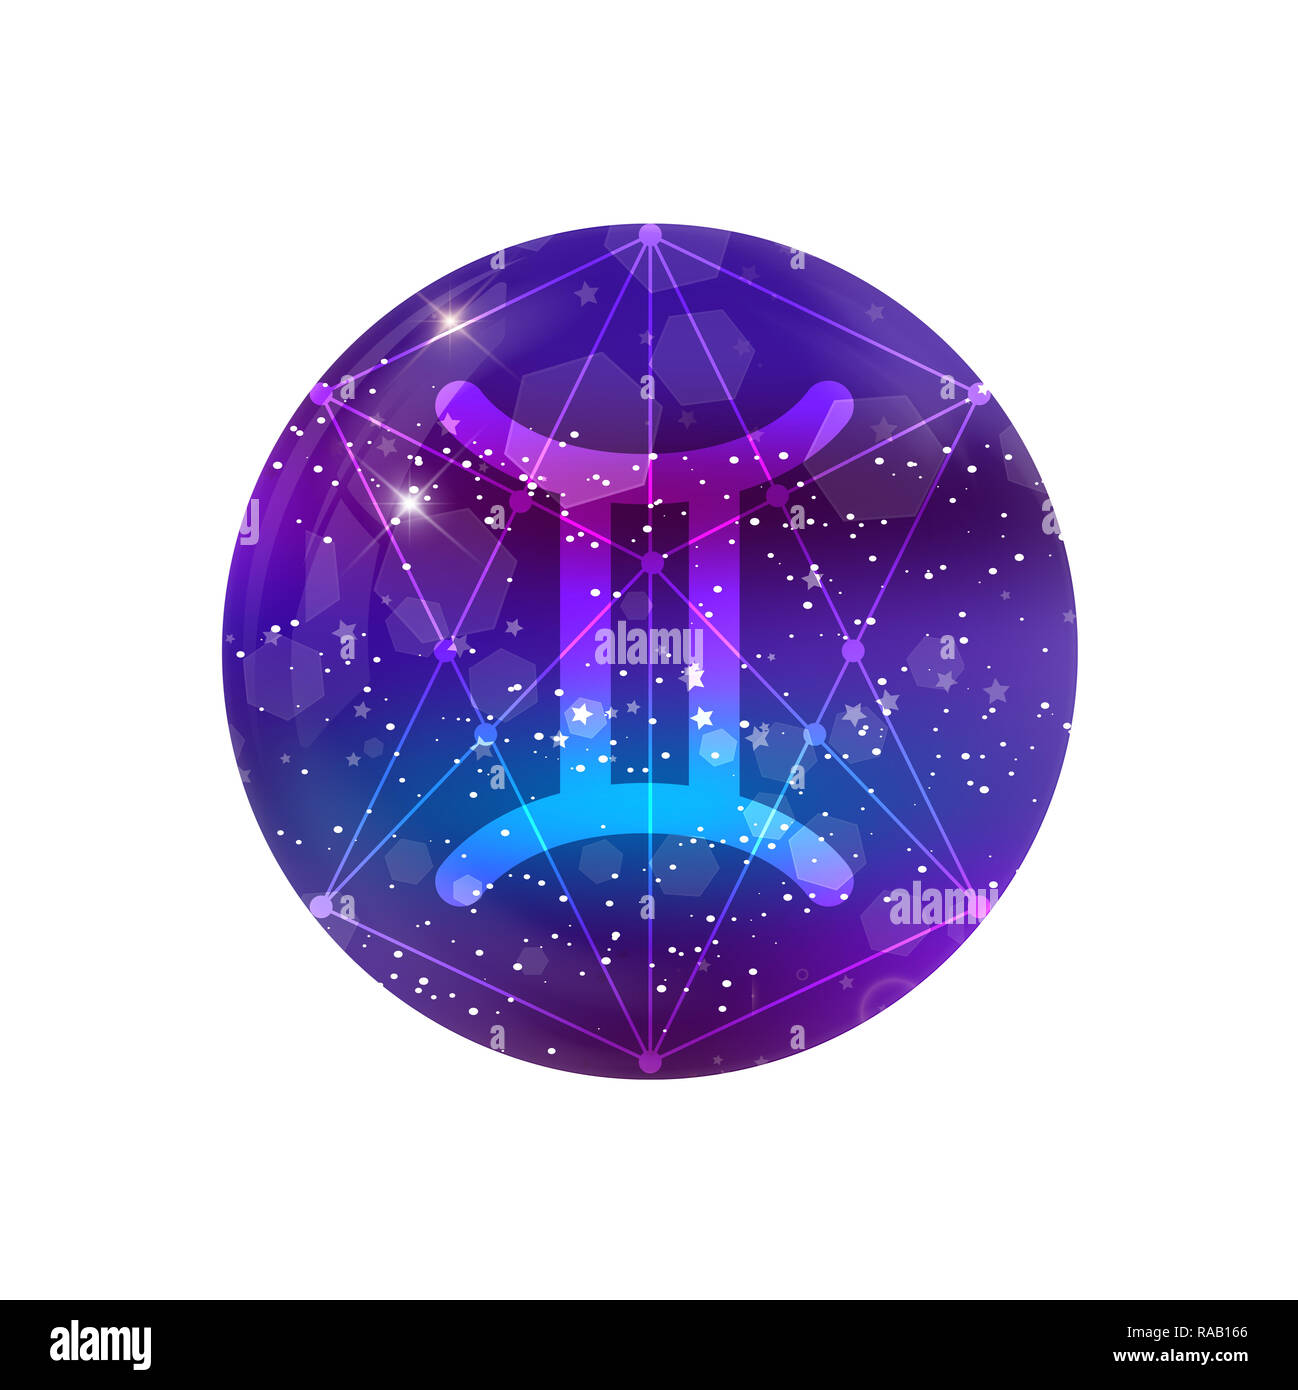 Gemini segno zodiacale e costellazione sul cosmica cielo viola con stelle luccicanti e nebula isolato su sfondo trasparente. icona al neon, pulsante WEB, c Foto Stock